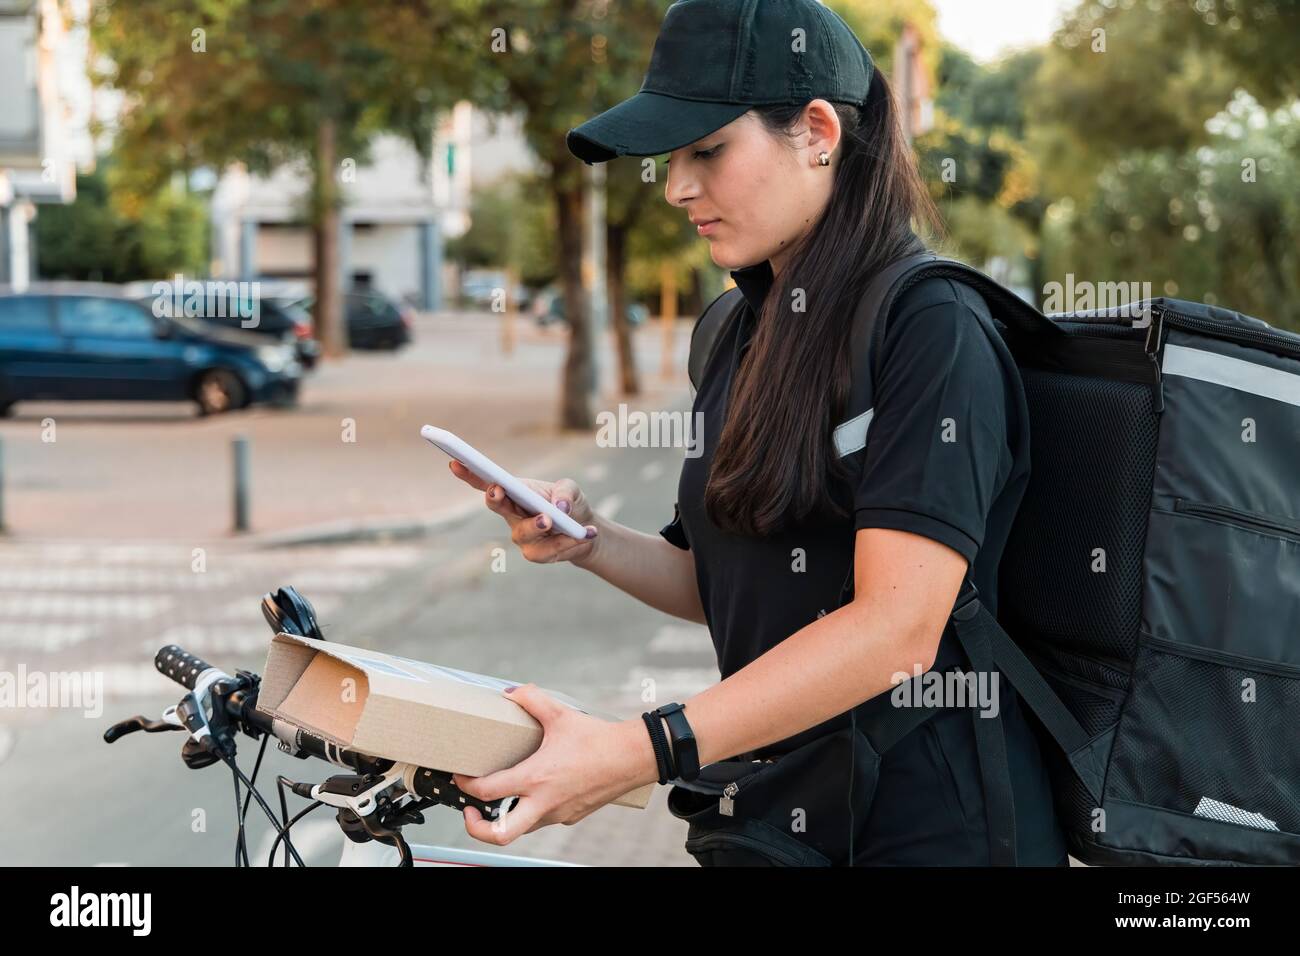 Persona giovane donna che effettua la scansione del pacchetto con smartphone Foto Stock